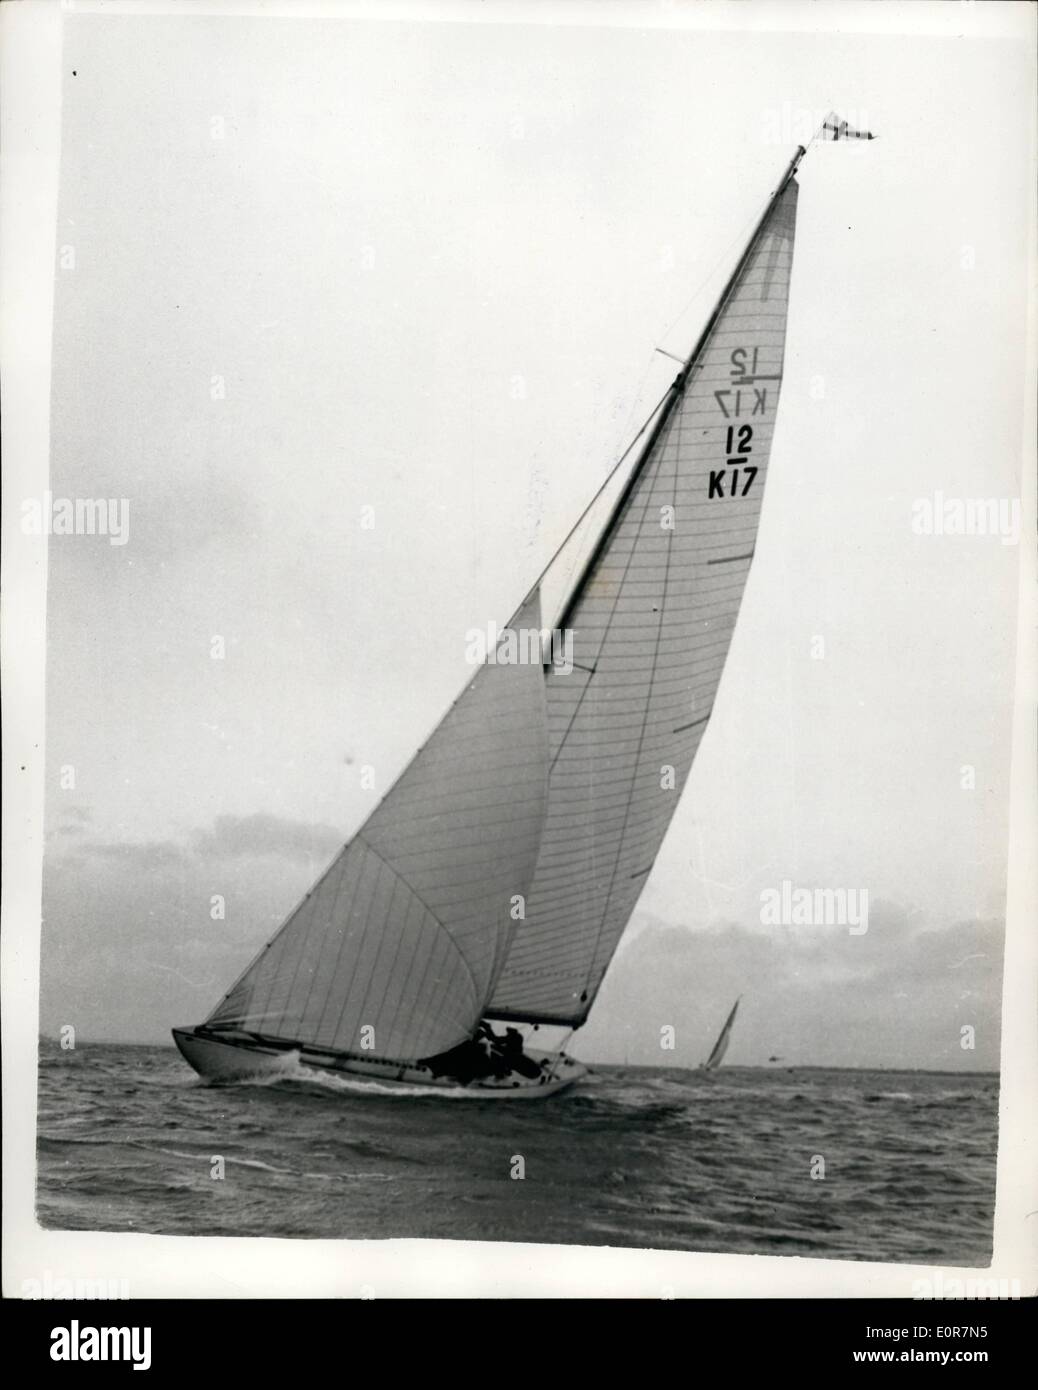 Mai 05, 1958 - Mettre le sceptre à travers son épreuve. : Le sceptre yach le challenger de l'America's Cup à Rhode Island, en septembre prochain - en photo pendant son procès dans le Solent. Banque D'Images